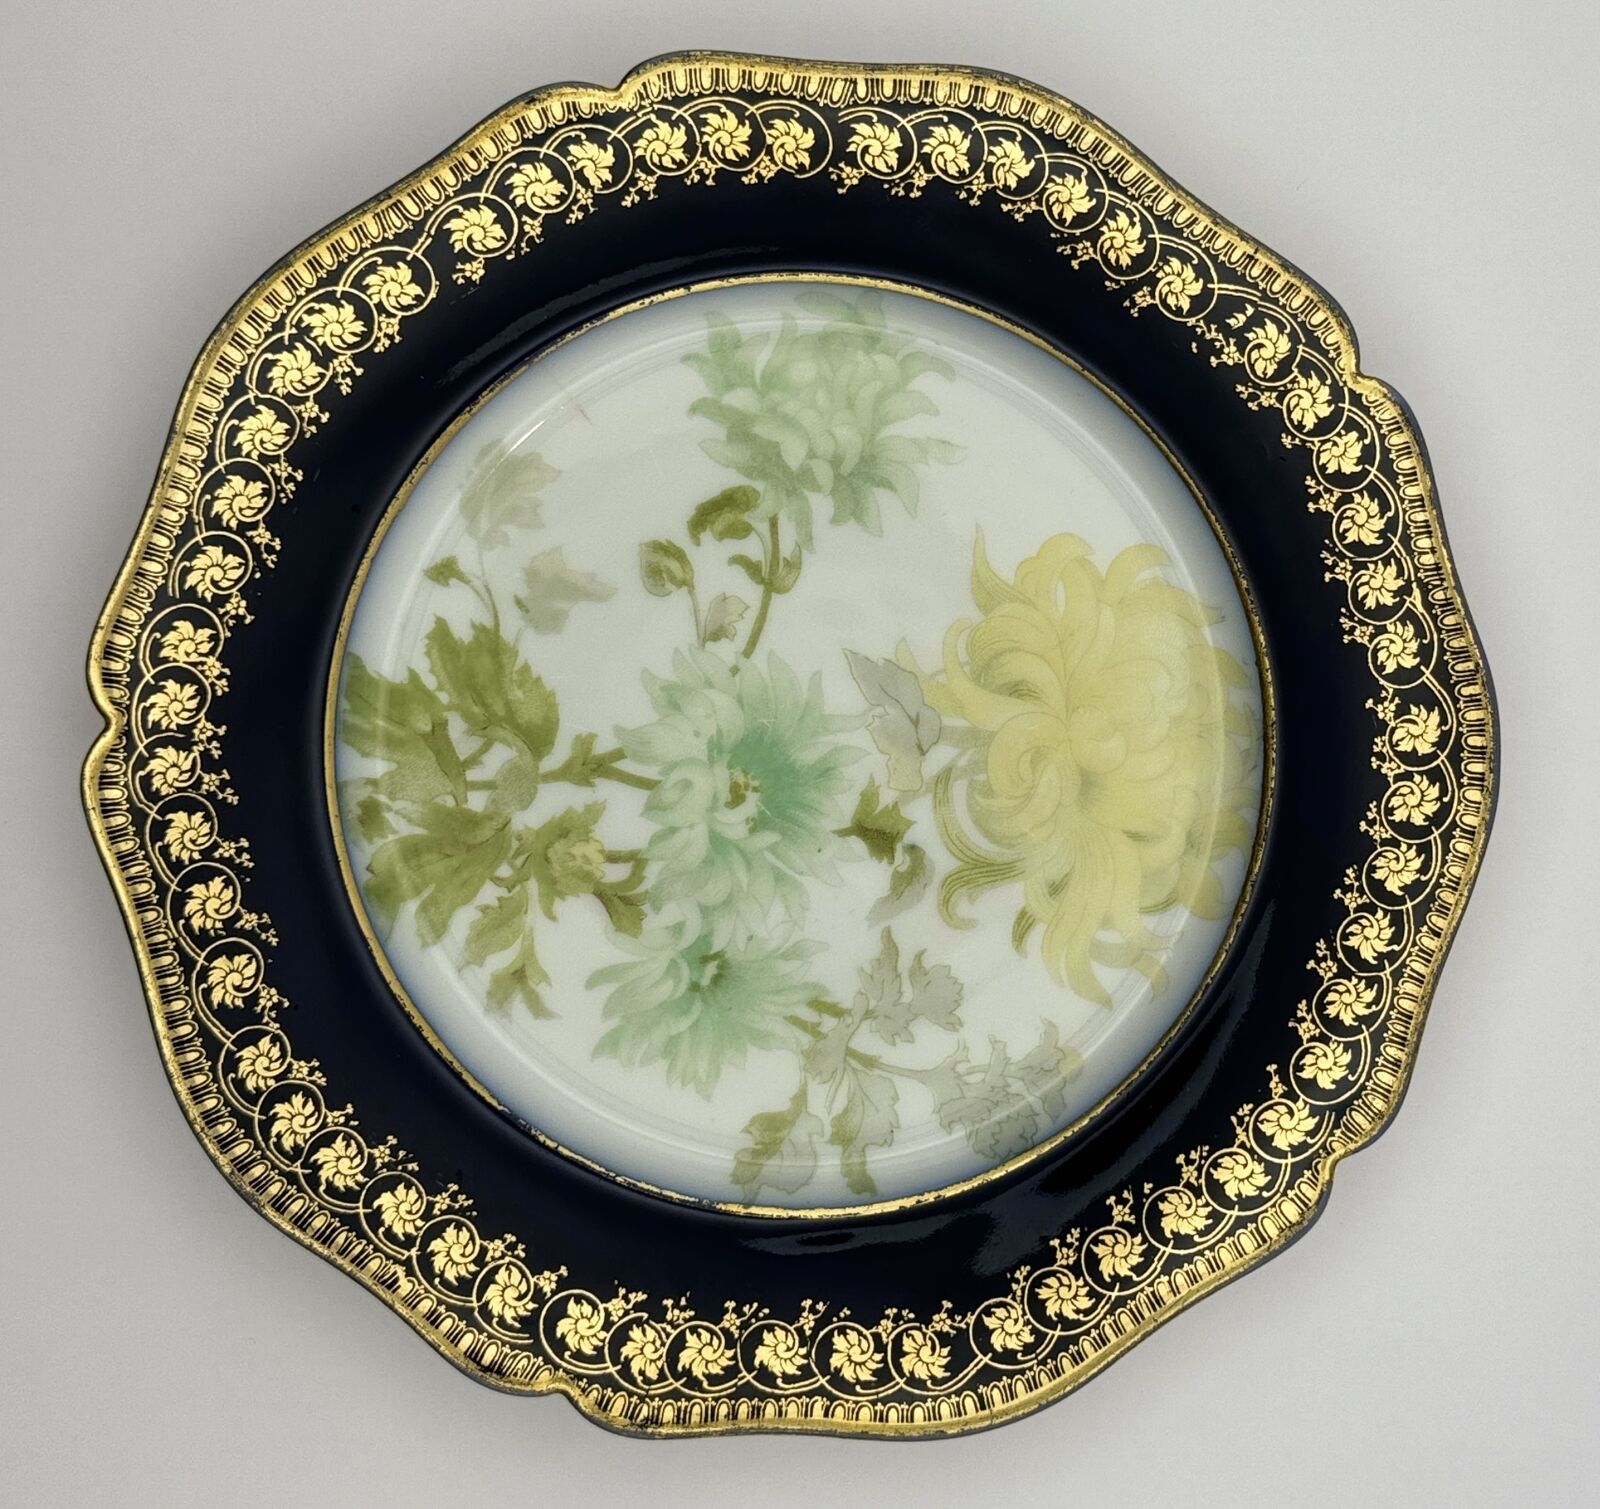 Wm Guerin & Co Limoges France Plate - Elegant Gold and Floral Design